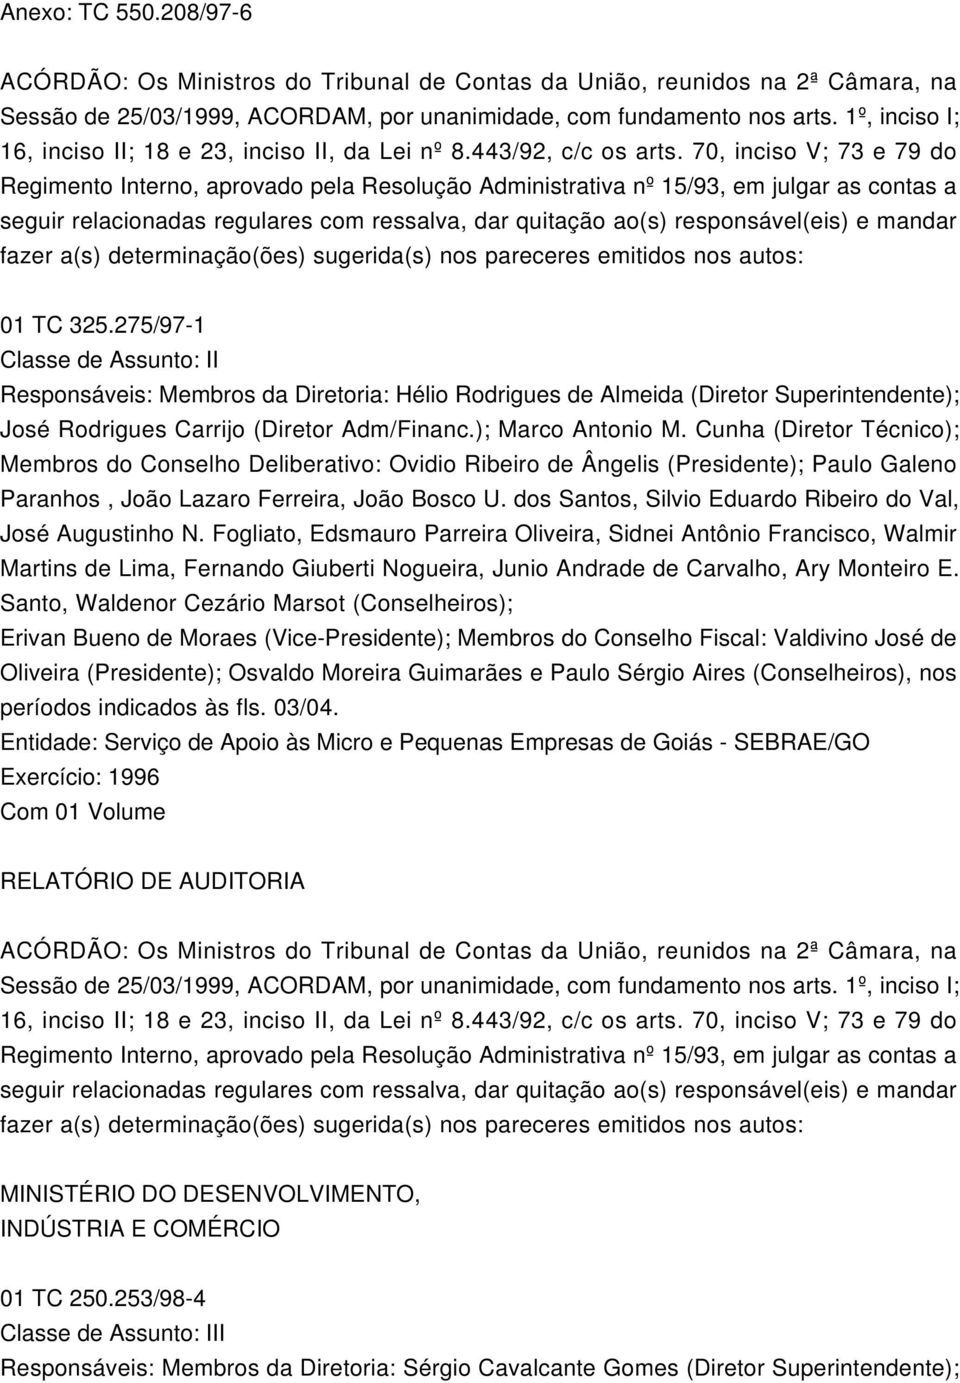 275/97-1 Responsáveis: Membros da Diretoria: Hélio Rodrigues de Almeida (Diretor Superintendente); José Rodrigues Carrijo (Diretor Adm/Financ.); Marco Antonio M.